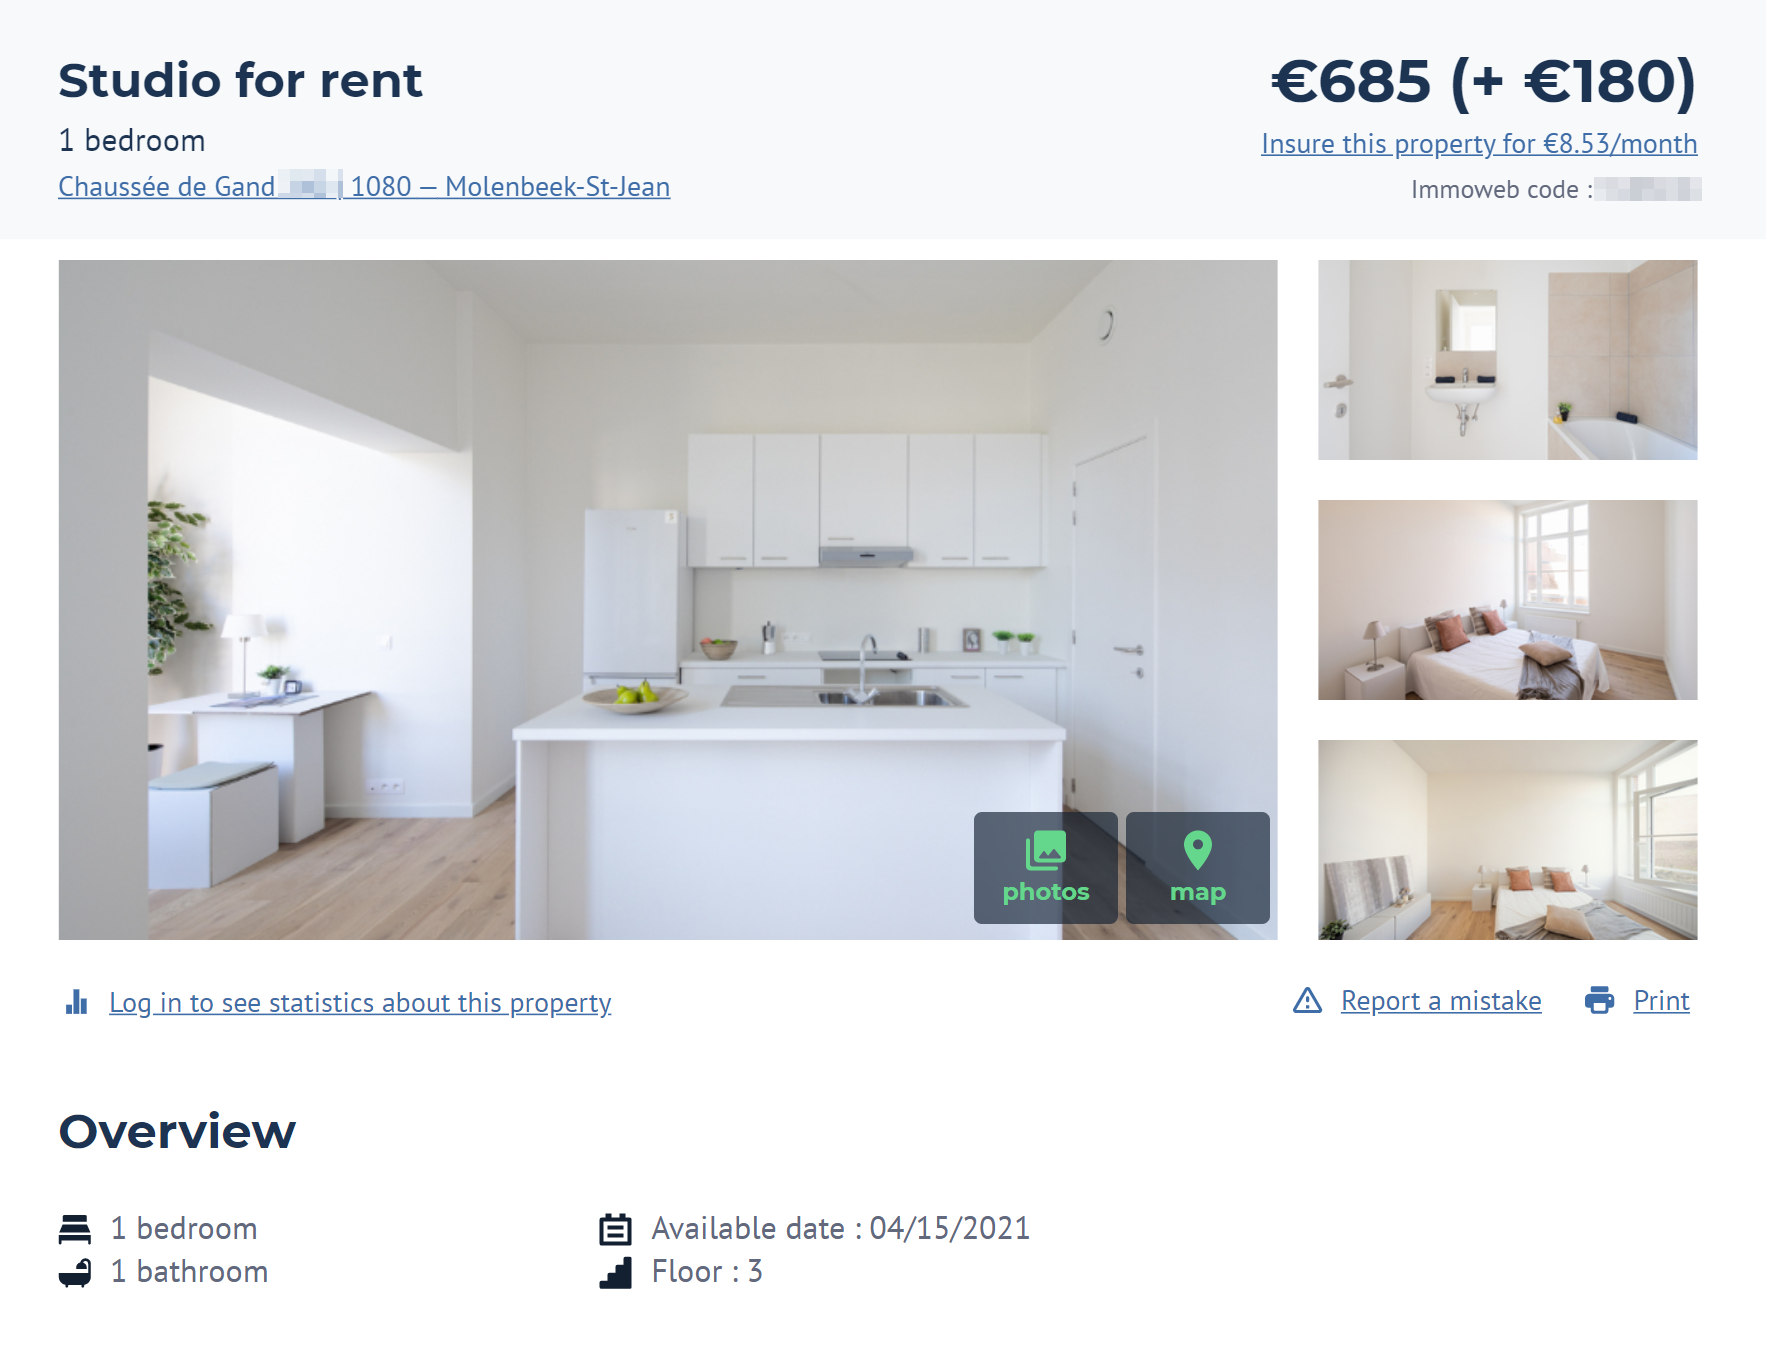 Меблированные апартаменты в неудачном районе Моленбек стоят всего 685 € в месяц. Еще 180 € придется отдавать за коммунальные услуги. Примерно такие же цены в других непрестижных районах. Источник: Immoweb